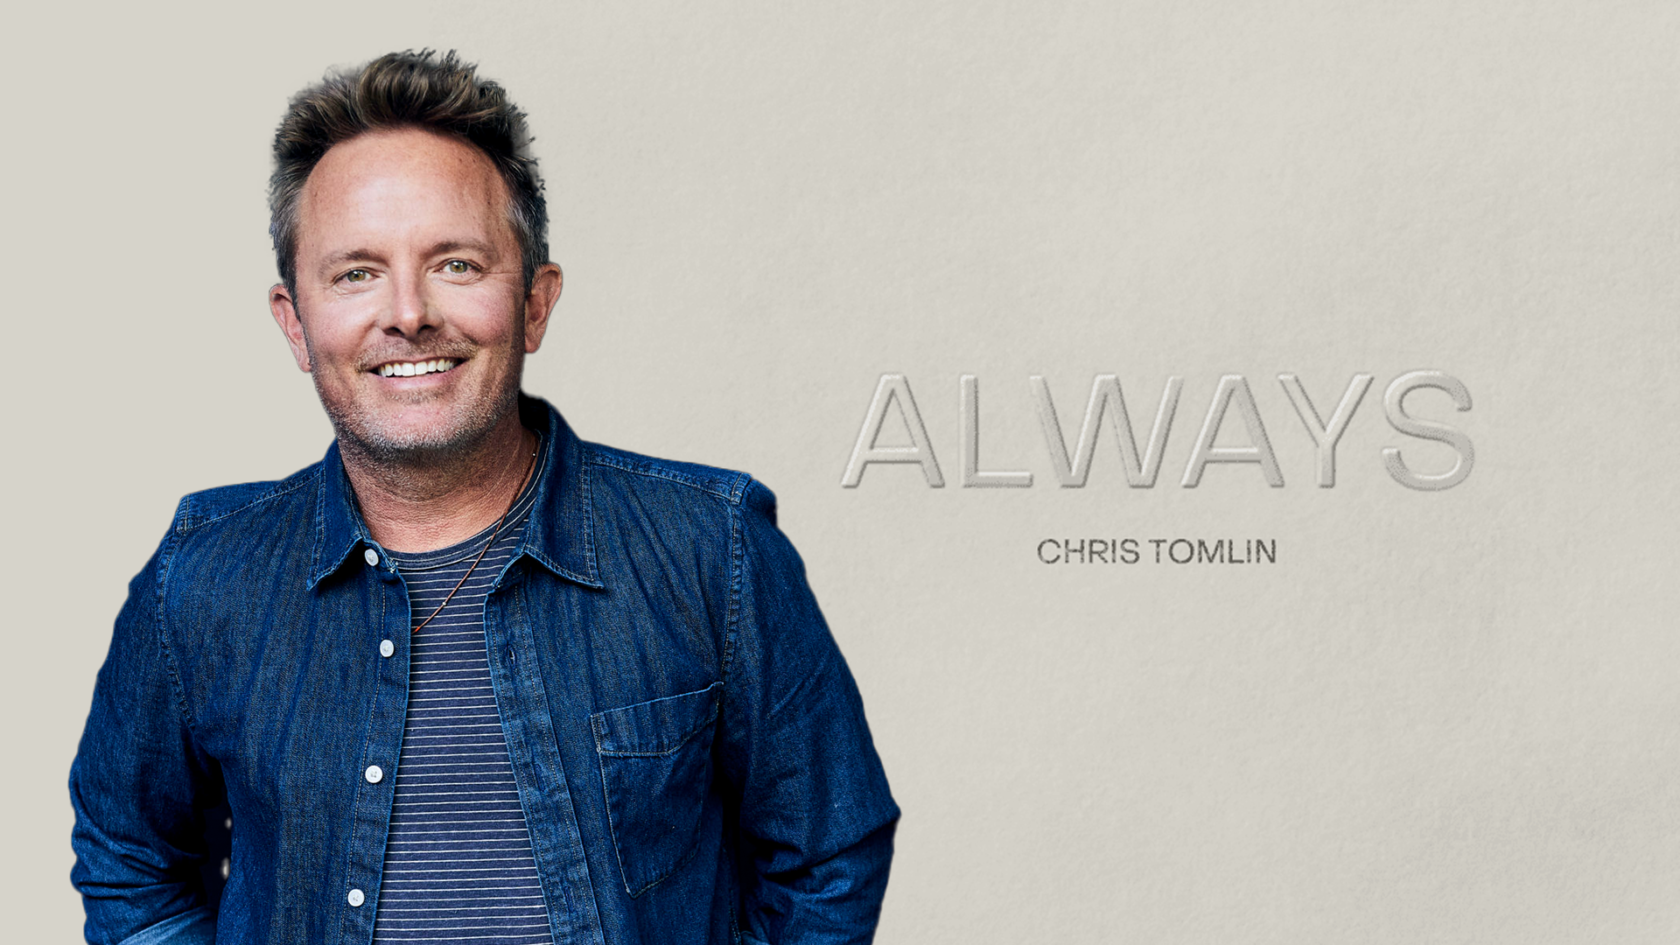 Chris Tomlin 'ALWAYS' Interview